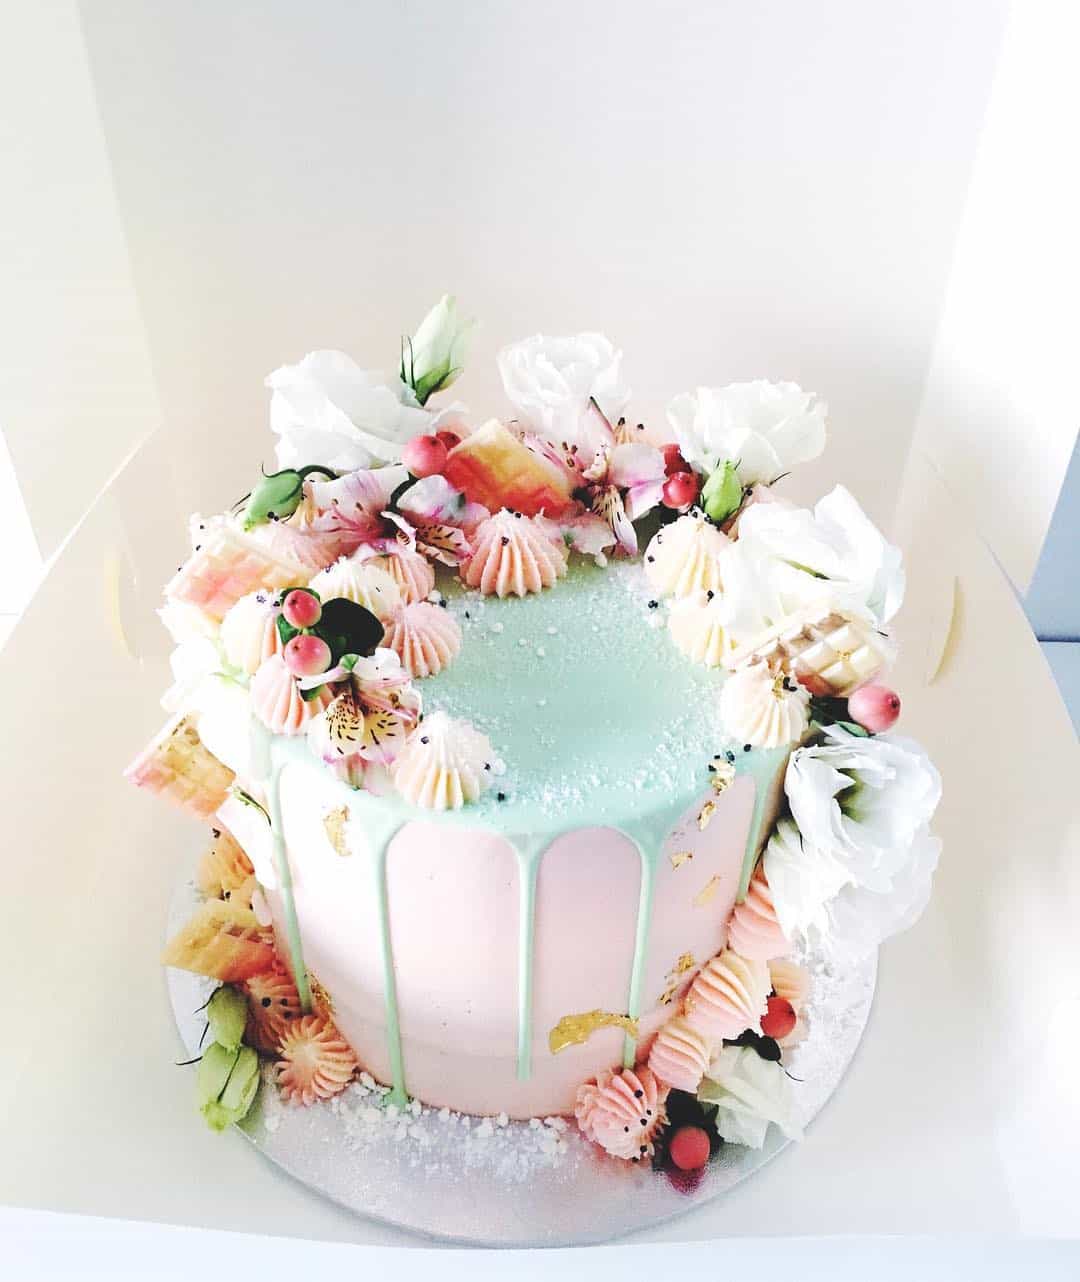 Meringhe Fatate✨ – Carola cakes decorator